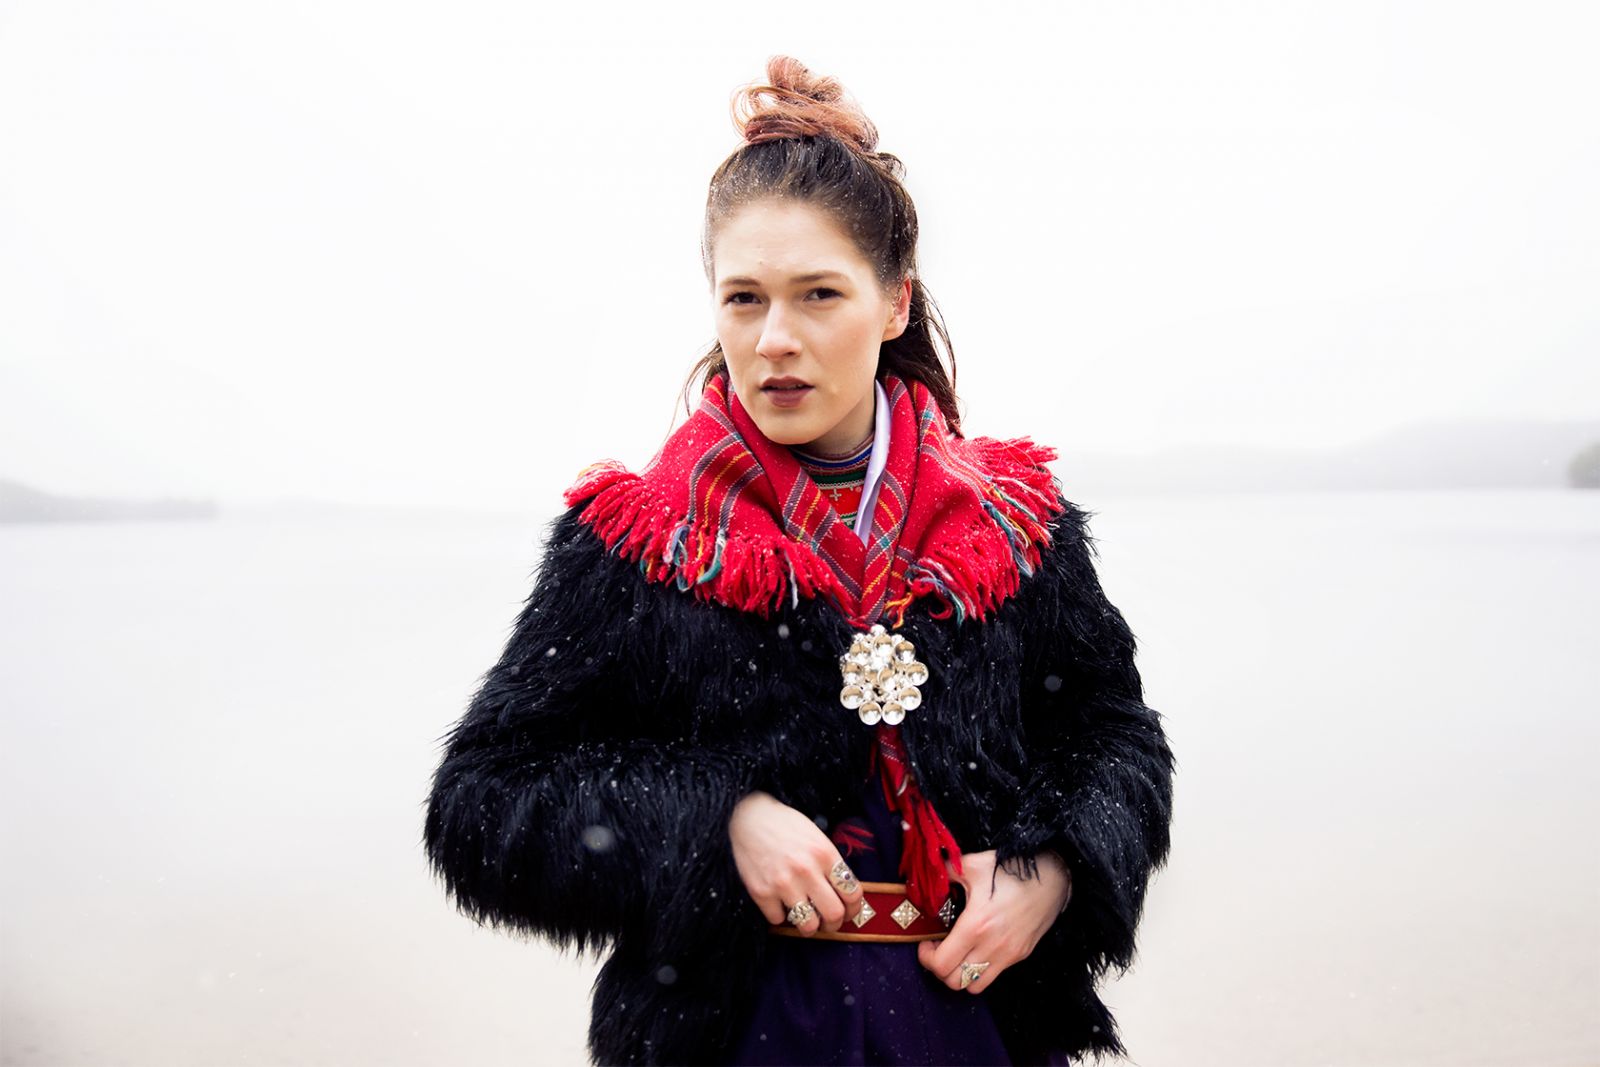 Avantgarde-musik og folkesang på et samisk sprog, der kun tales af 10 mennesker</br>Katarina Barruk joiker / synger på sit modersmål, ume samisk. Hun kommer fra Västerbotten, i Sápmi - i den svenske del af Lapland.</br>Foto: Helleday Arts